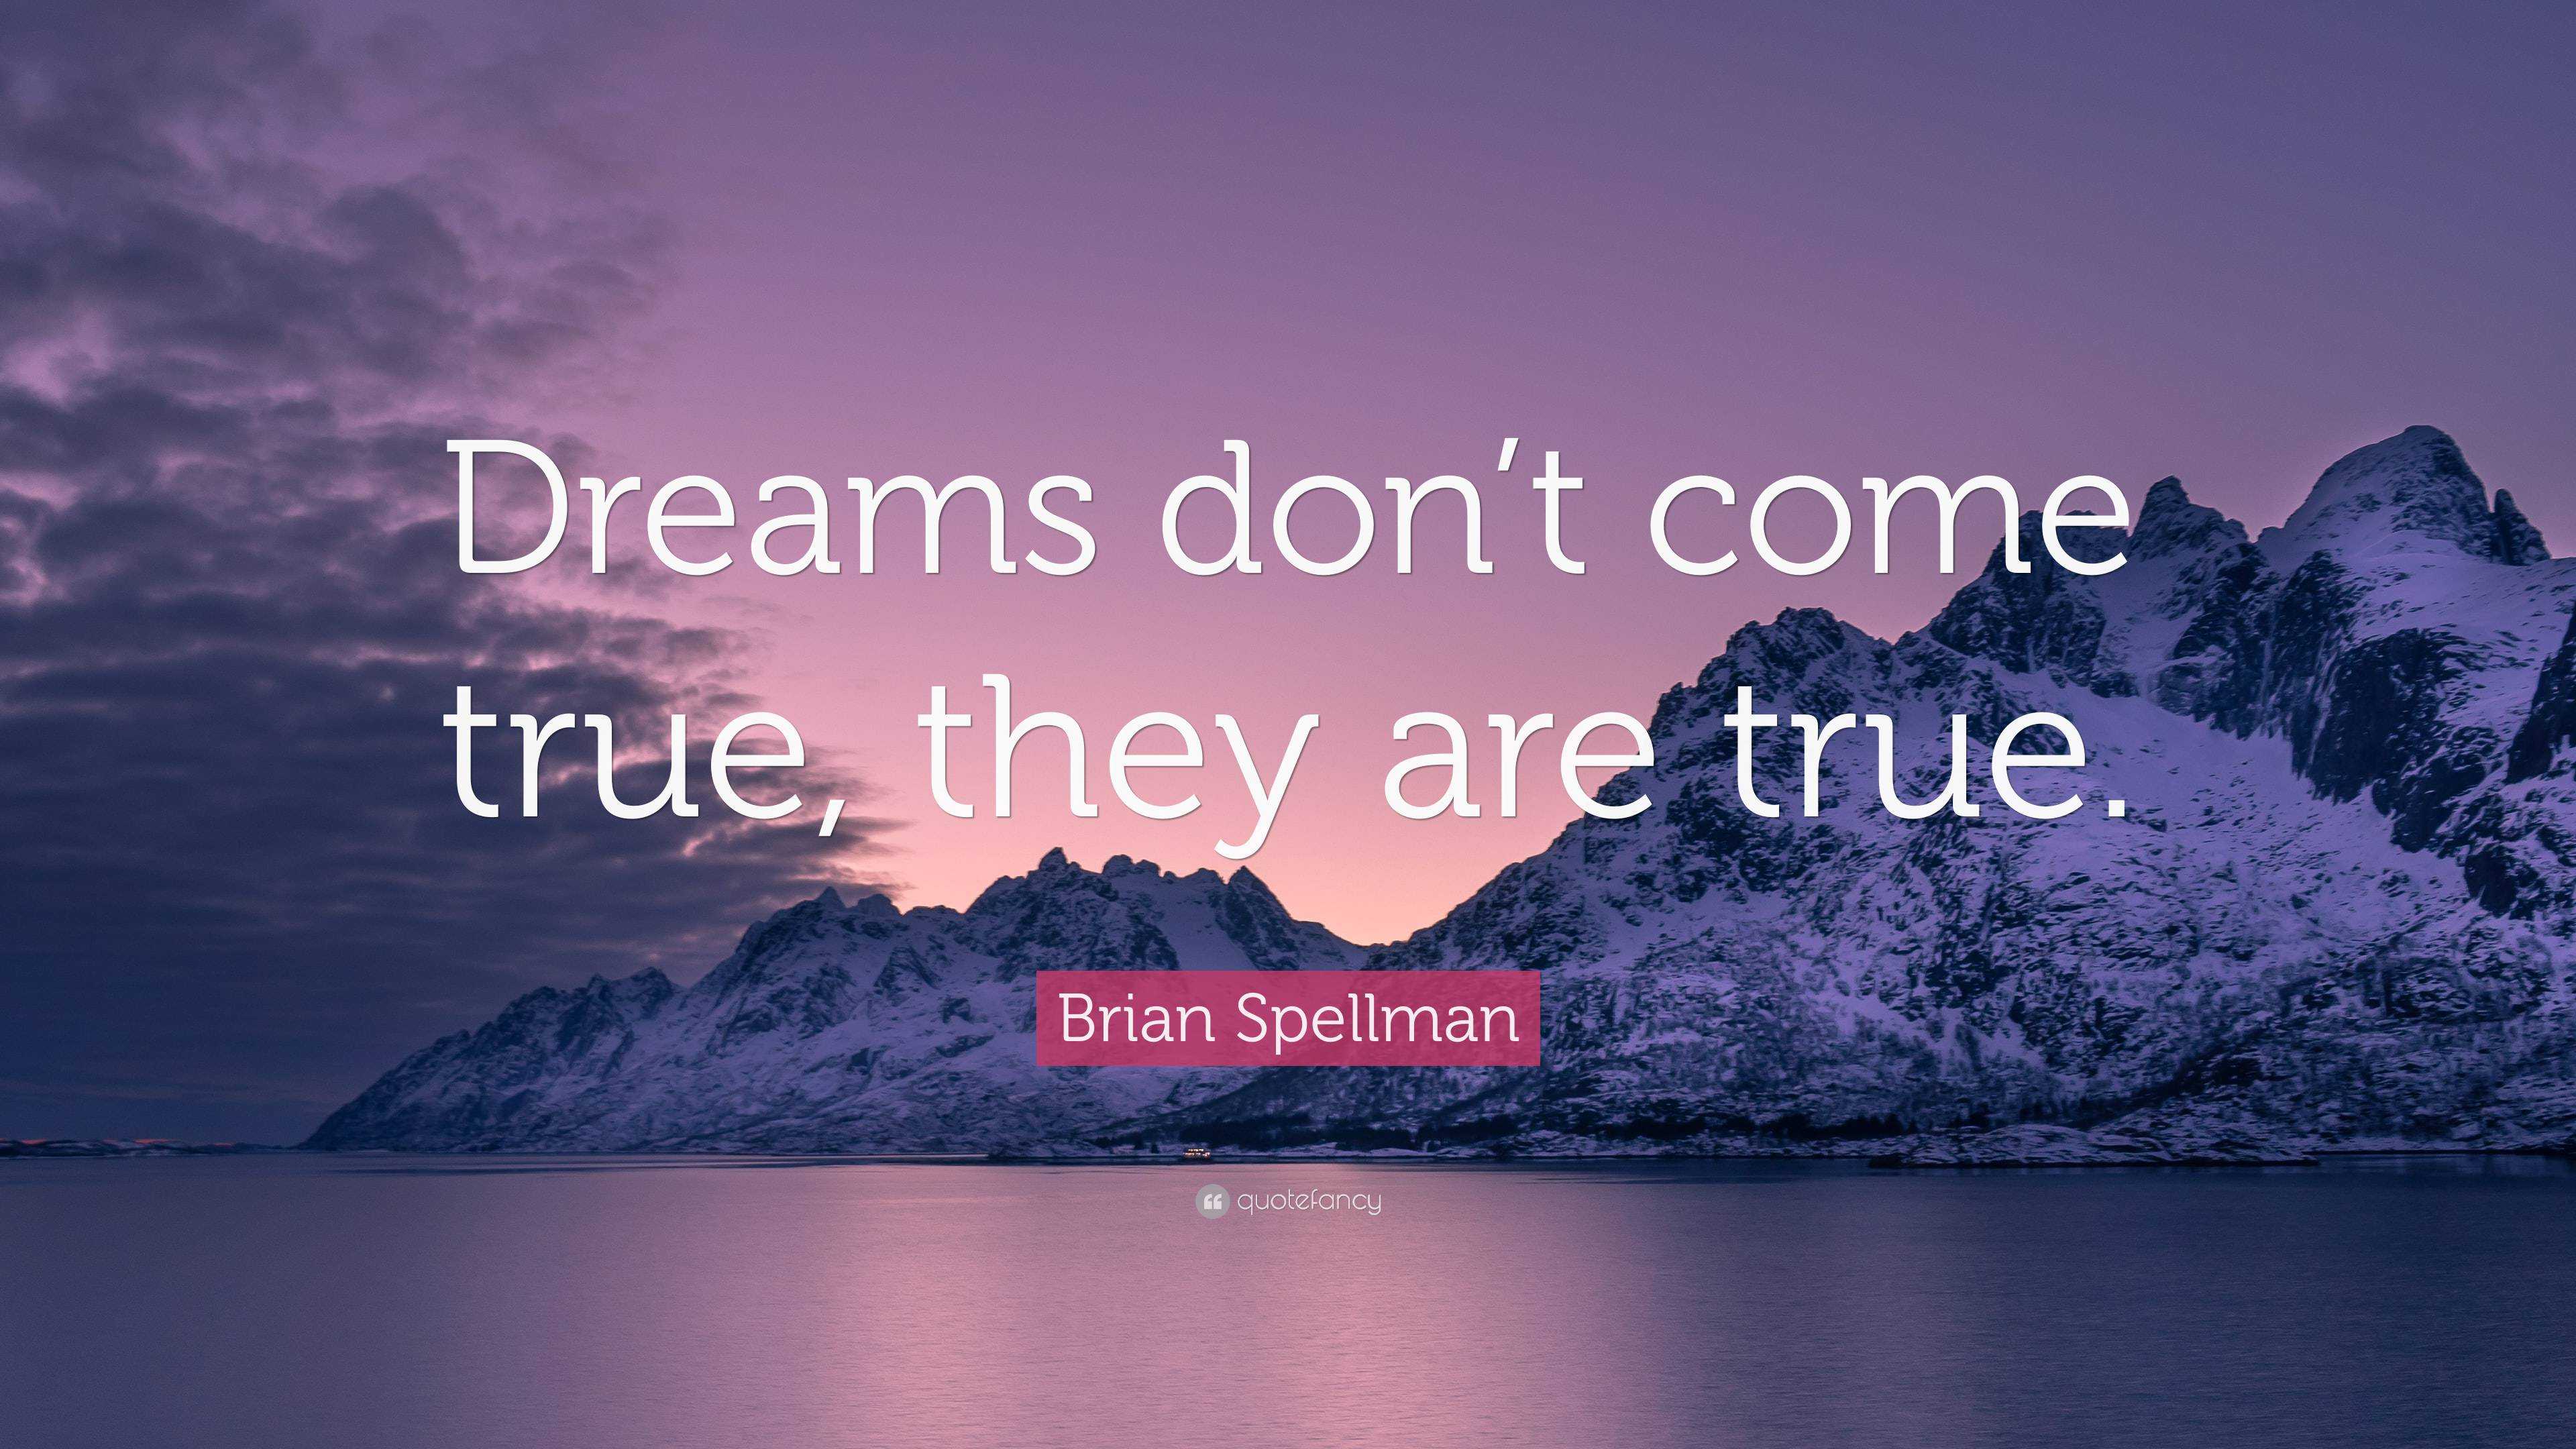 Brian Spellman Quote “dreams Don’t Come True They Are True ”